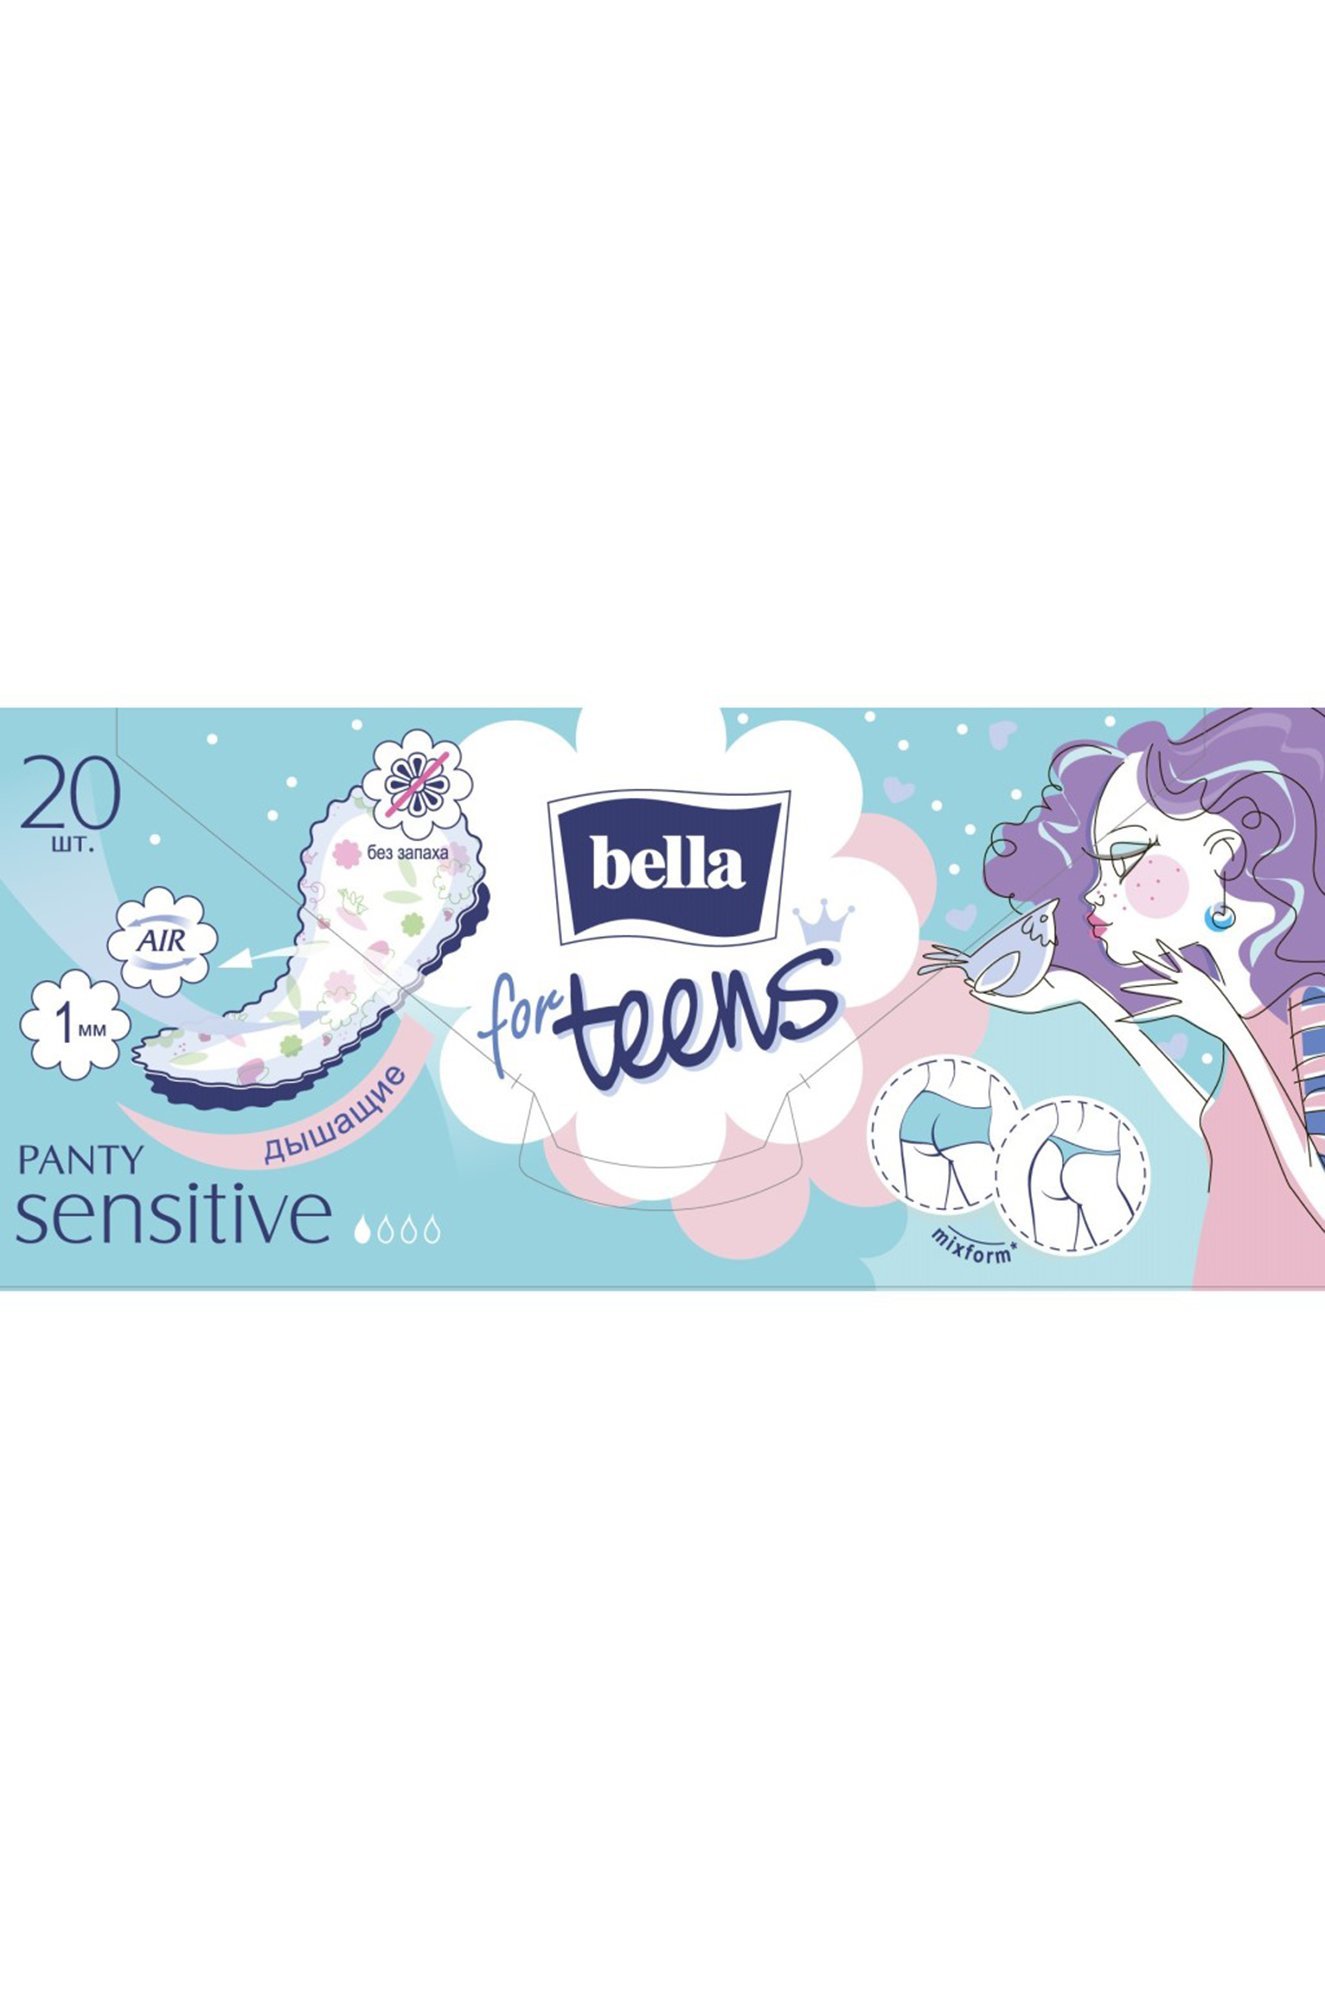 Женские ежедневные прокладки bella for teens sensitive 20 шт. Bella